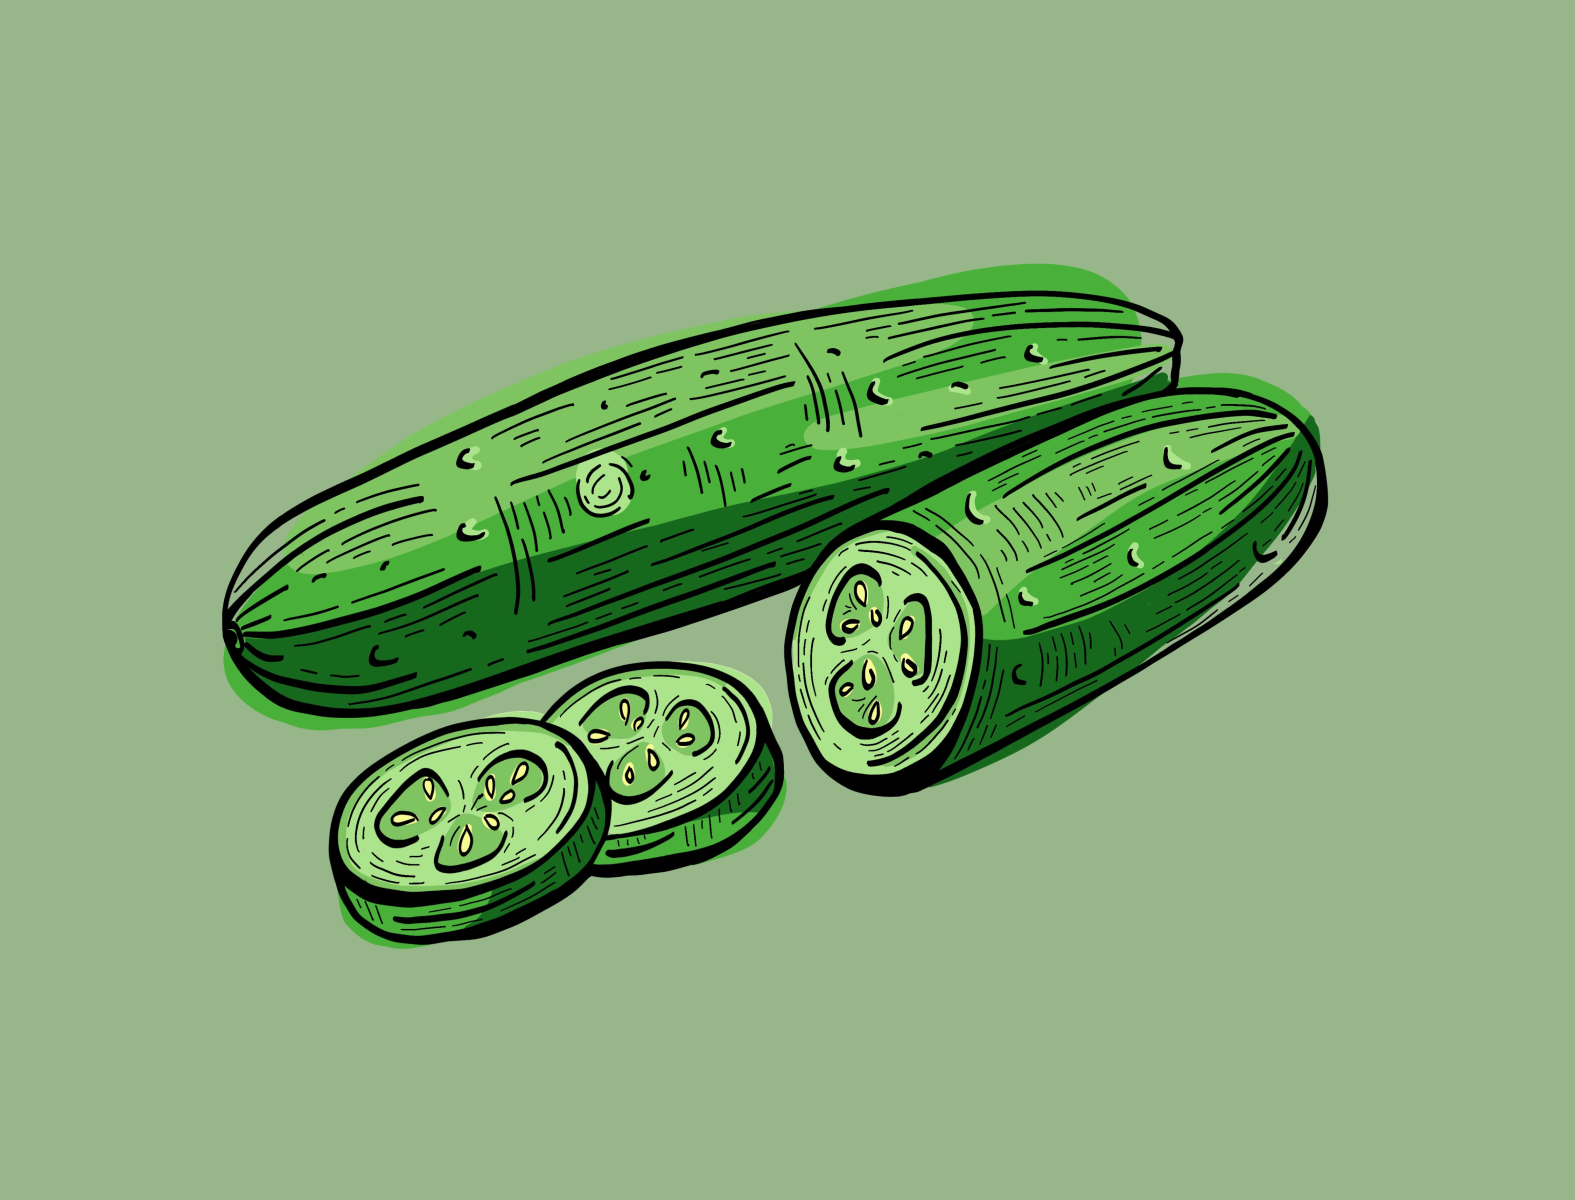 শশা আঁকানো শিখুন🥒How to draw a Cucumber 🥒 Vegetable Drawing | Cucumber  Drawing 🥒 শশা আঁকানো 💚 Easy #drawing #painting #vegetables | By Rongdhonu  Art and DrawingFacebook